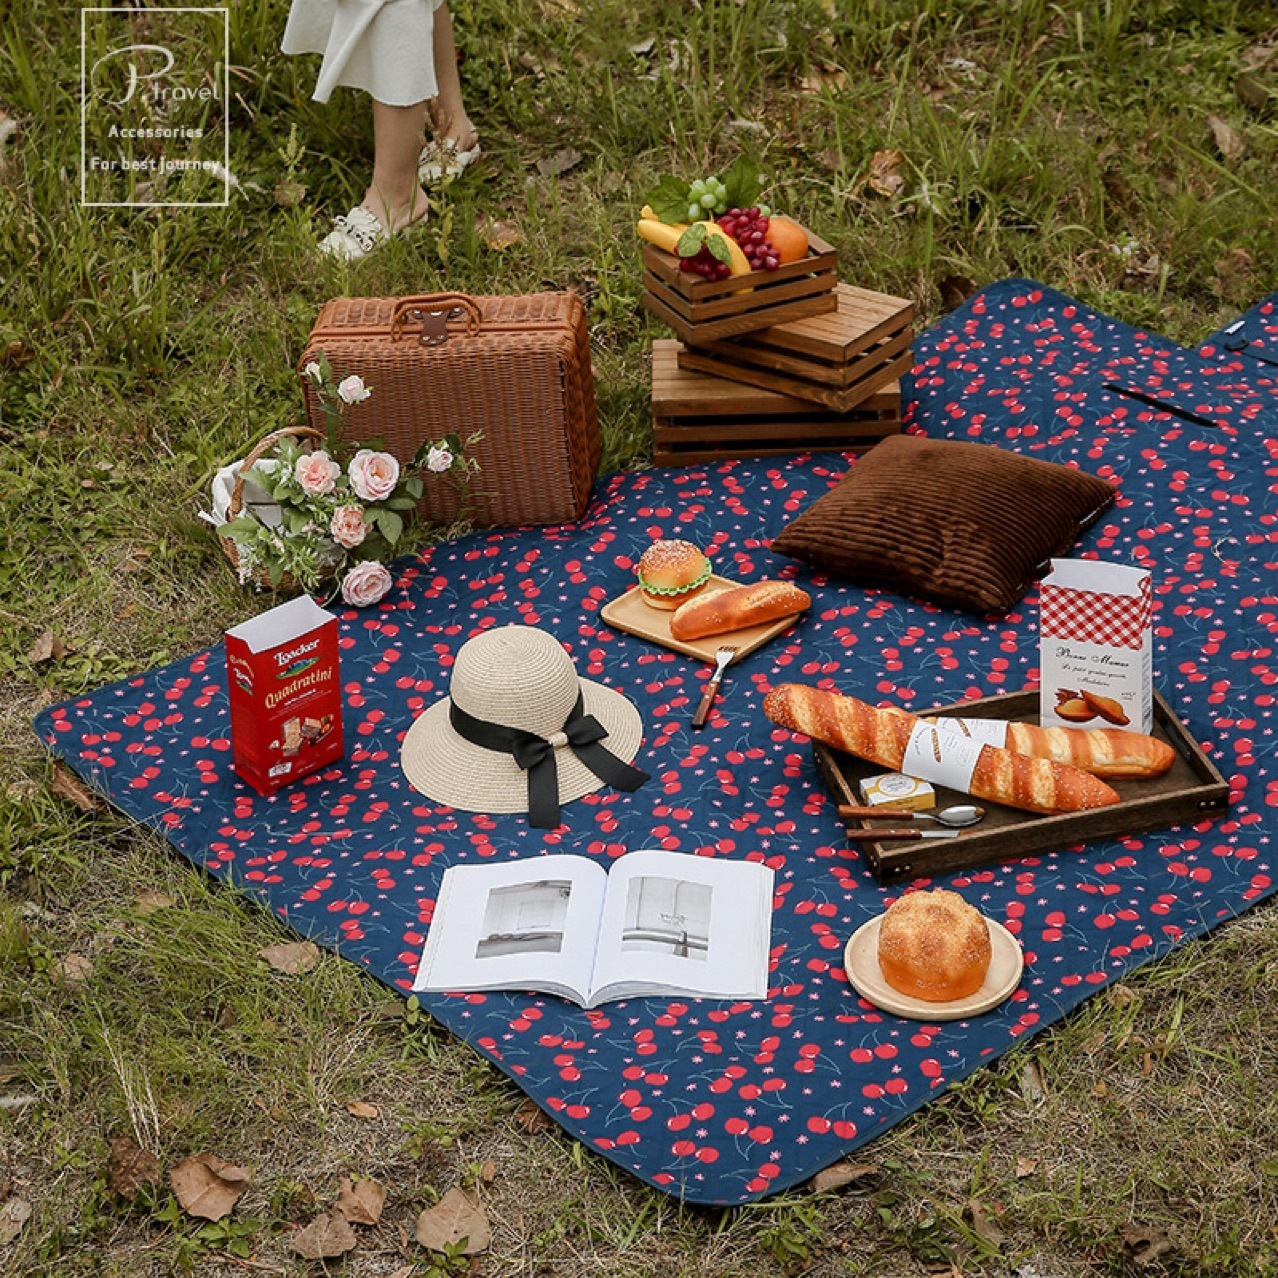 新品户外休闲露营地垫野餐垫防潮垫轻便易收纳折叠斜挎手提